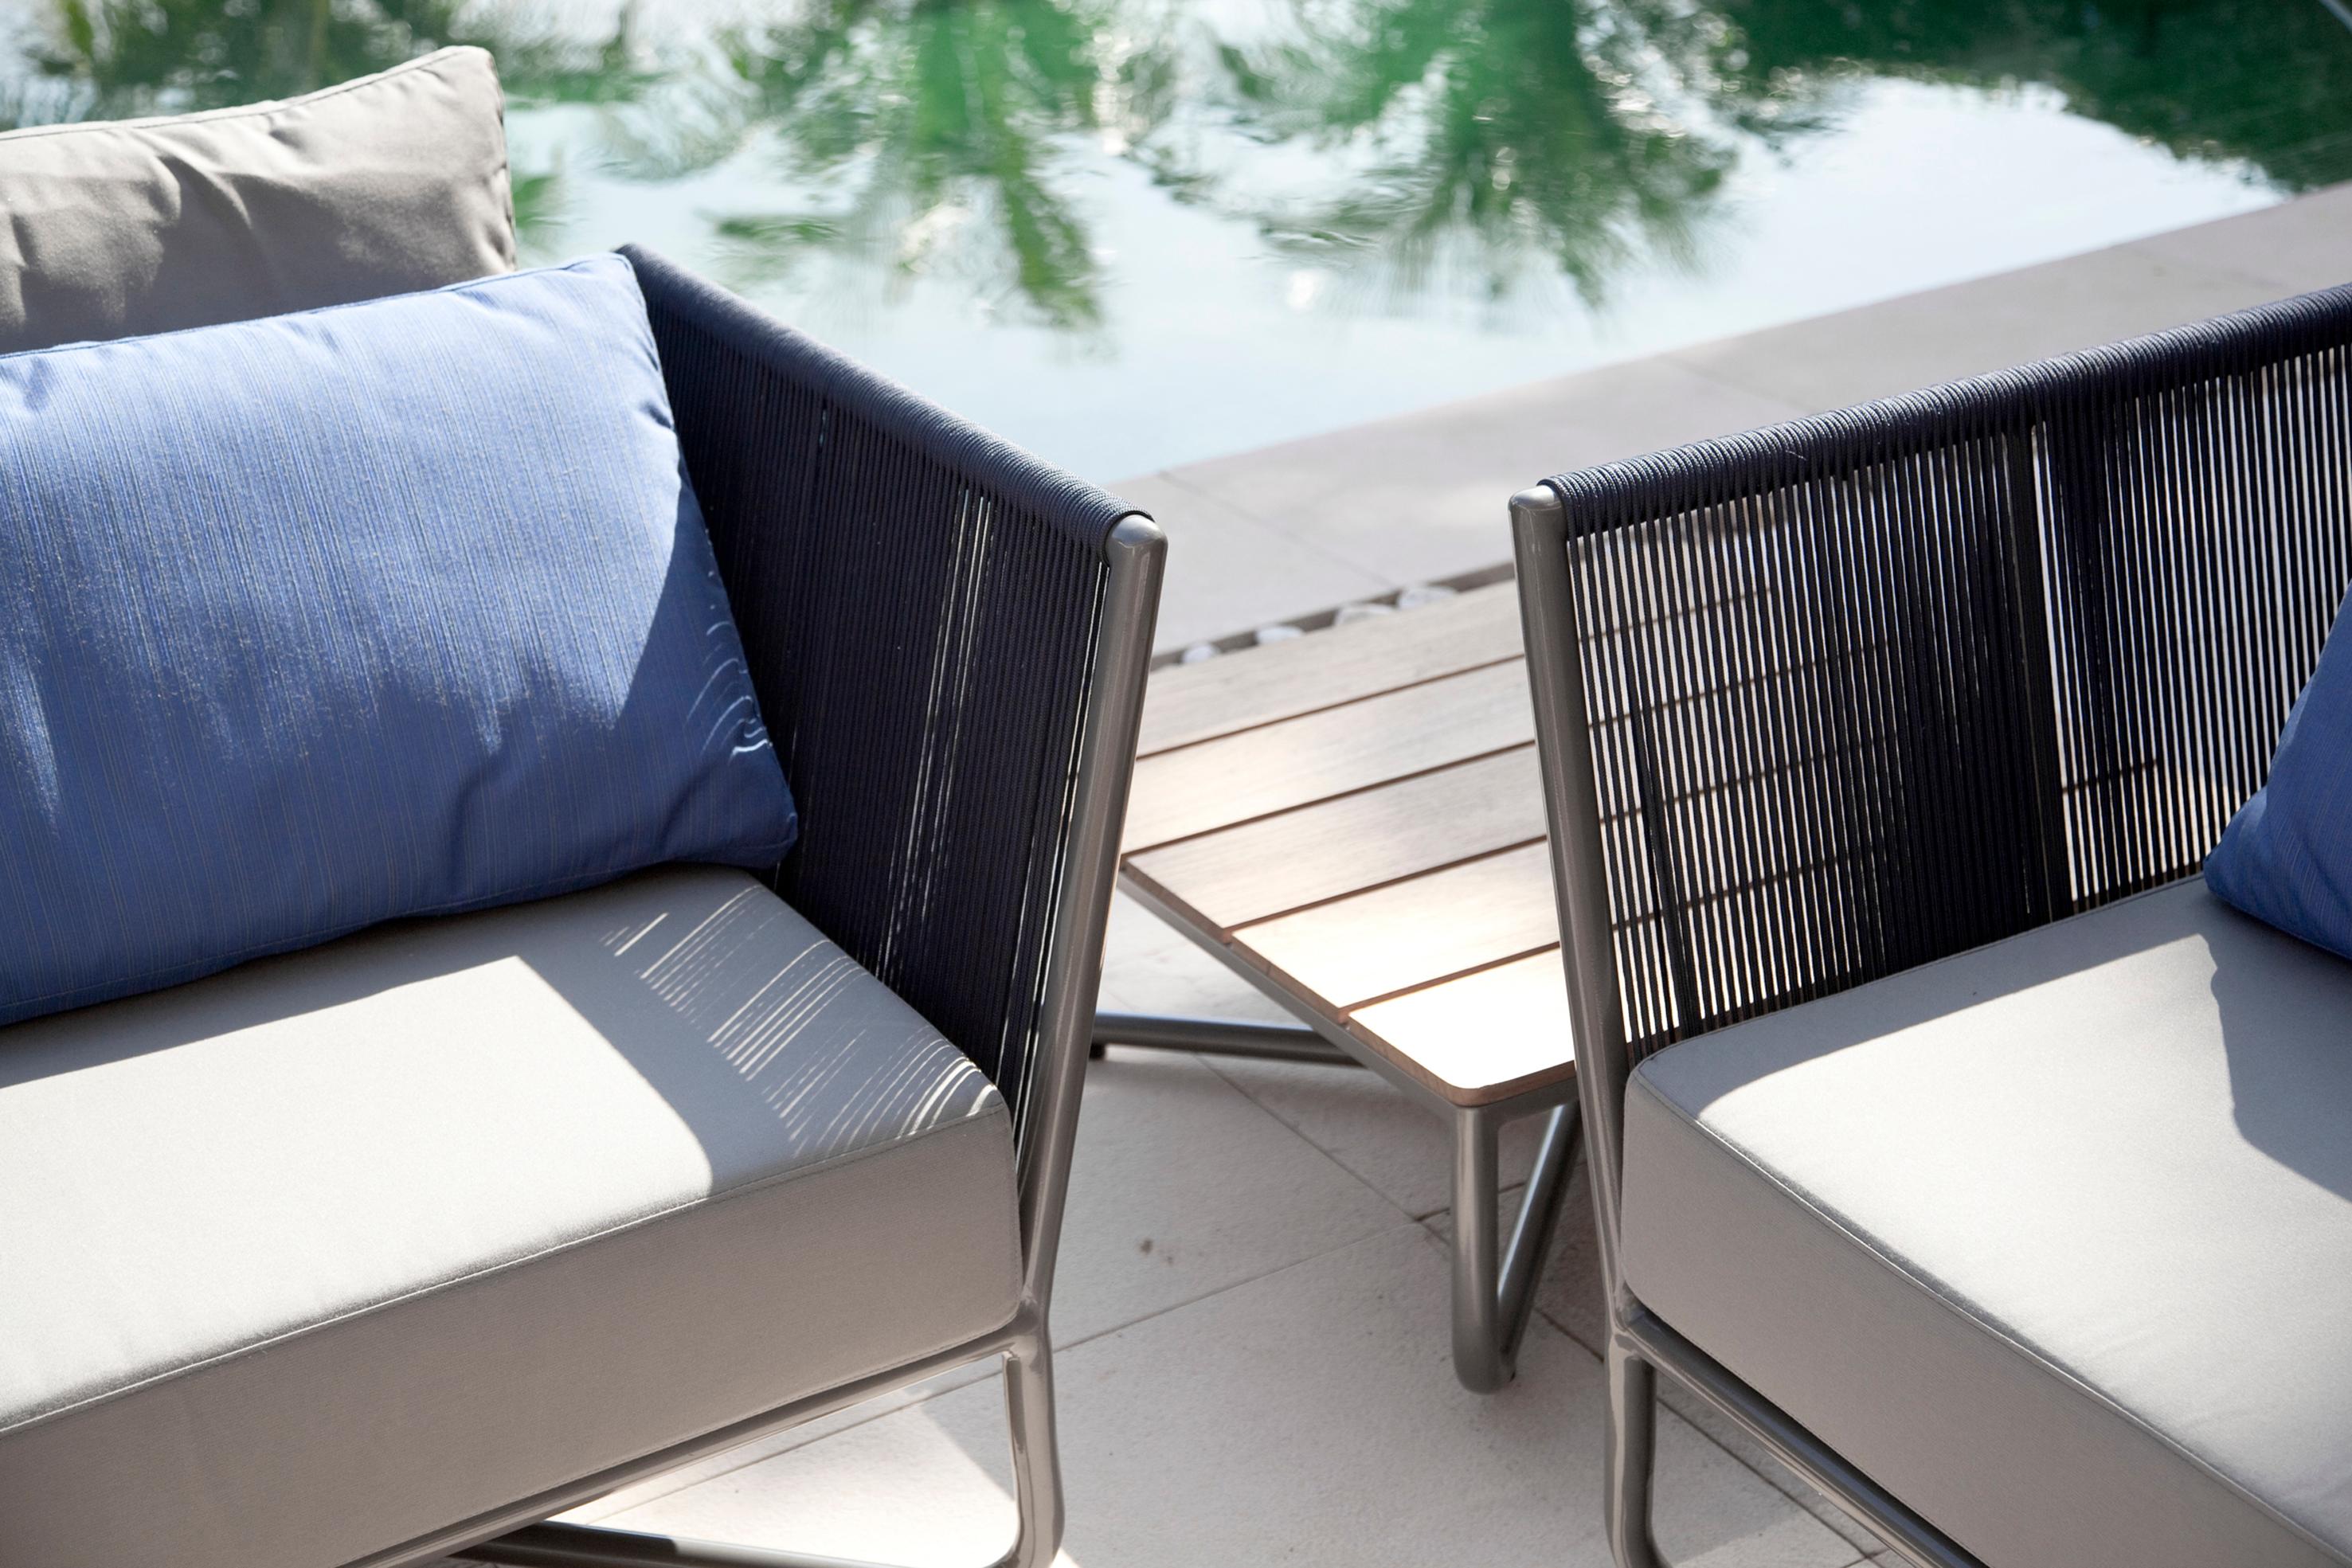 Dieser Sessel oder Lounge-Sessel für den Außenbereich ist Teil der Flap 2.0 Outdoor-Kollektion, deren Design auf den Klappen von Flugzeugen basiert. Dieses Element lässt sich an der Krümmung der Arme und der Geometrie der Metallstruktur erkennen.